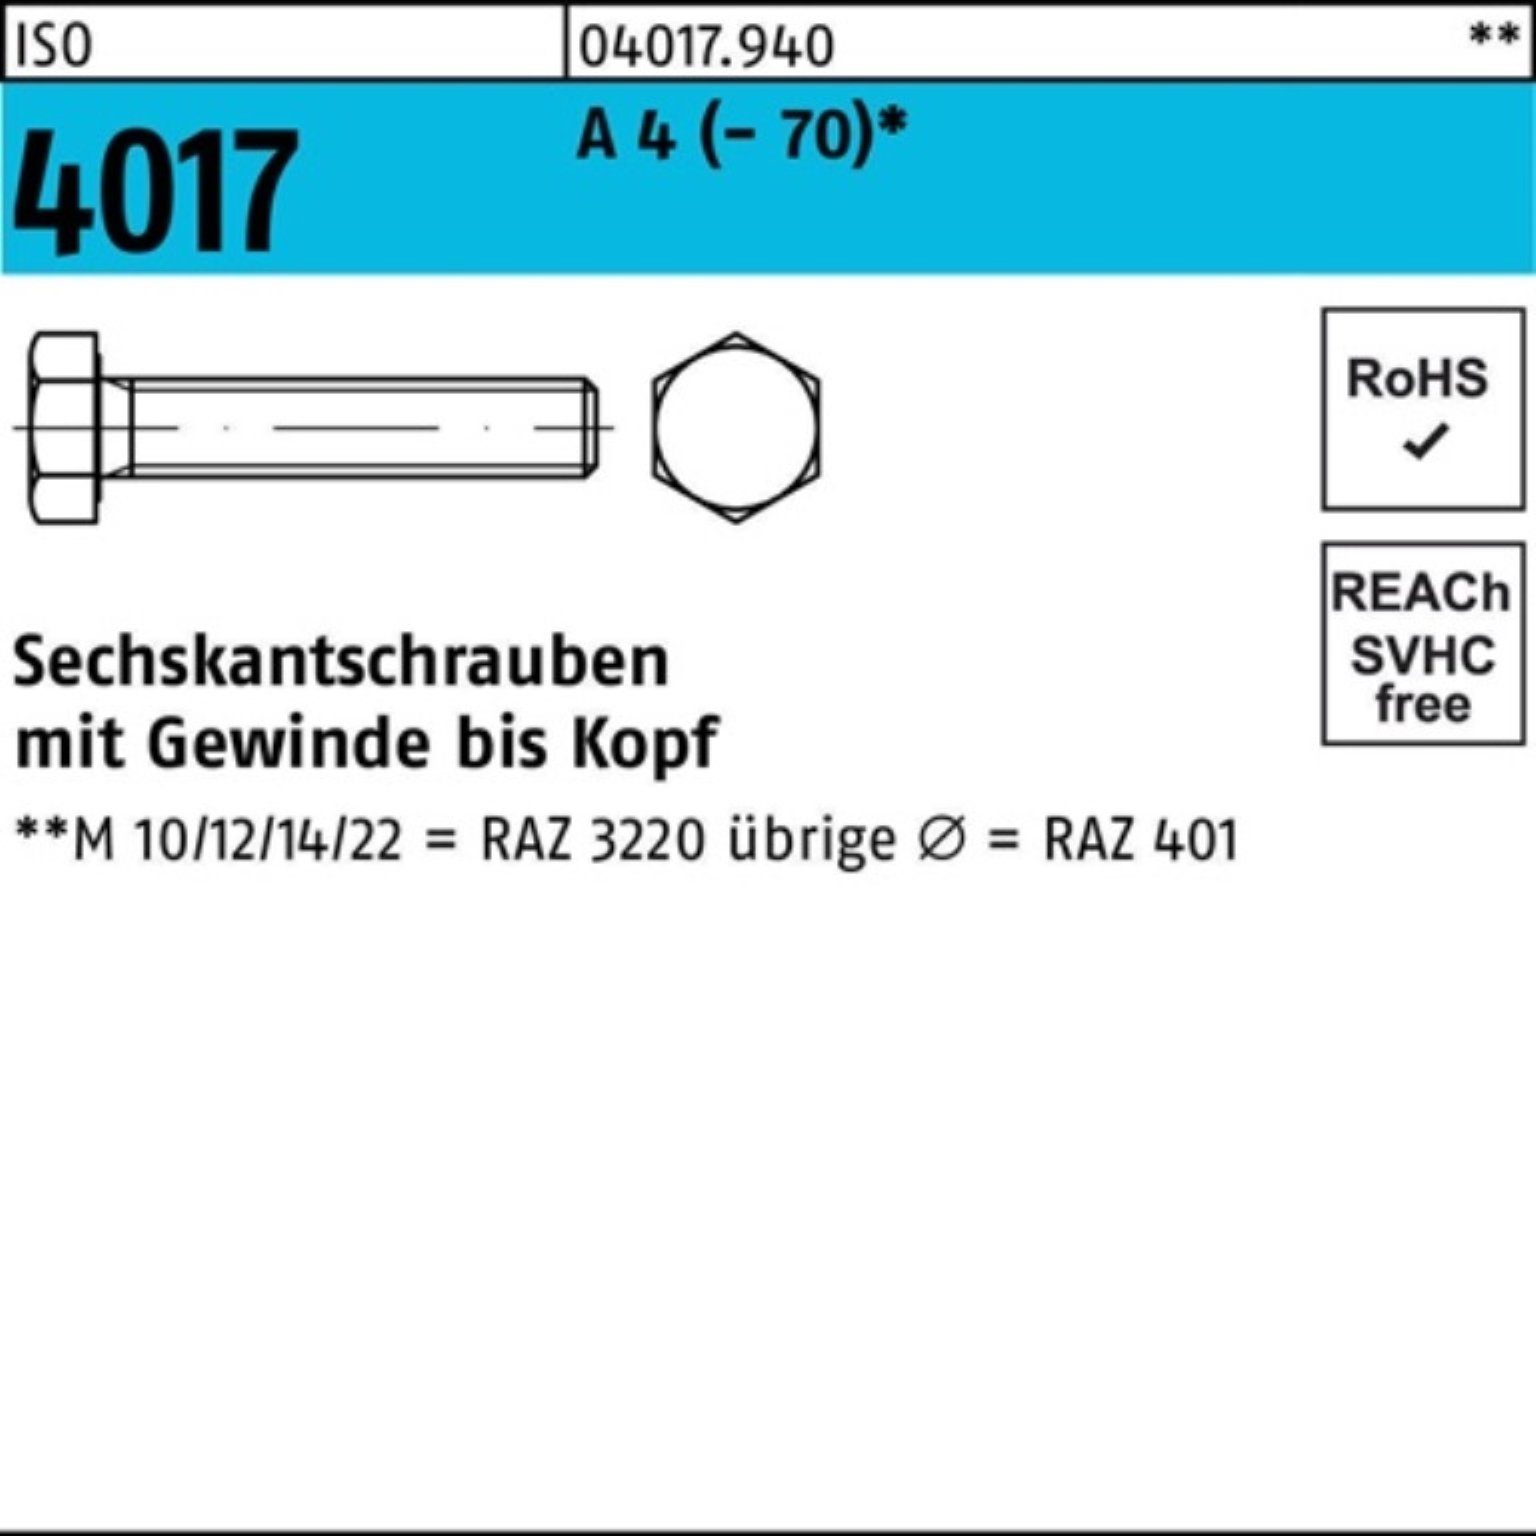 Bufab Sechskantschraube 100er Pack 120 A (70) Sechskantschraube 4017 4 M24x Stück 1 VG ISO